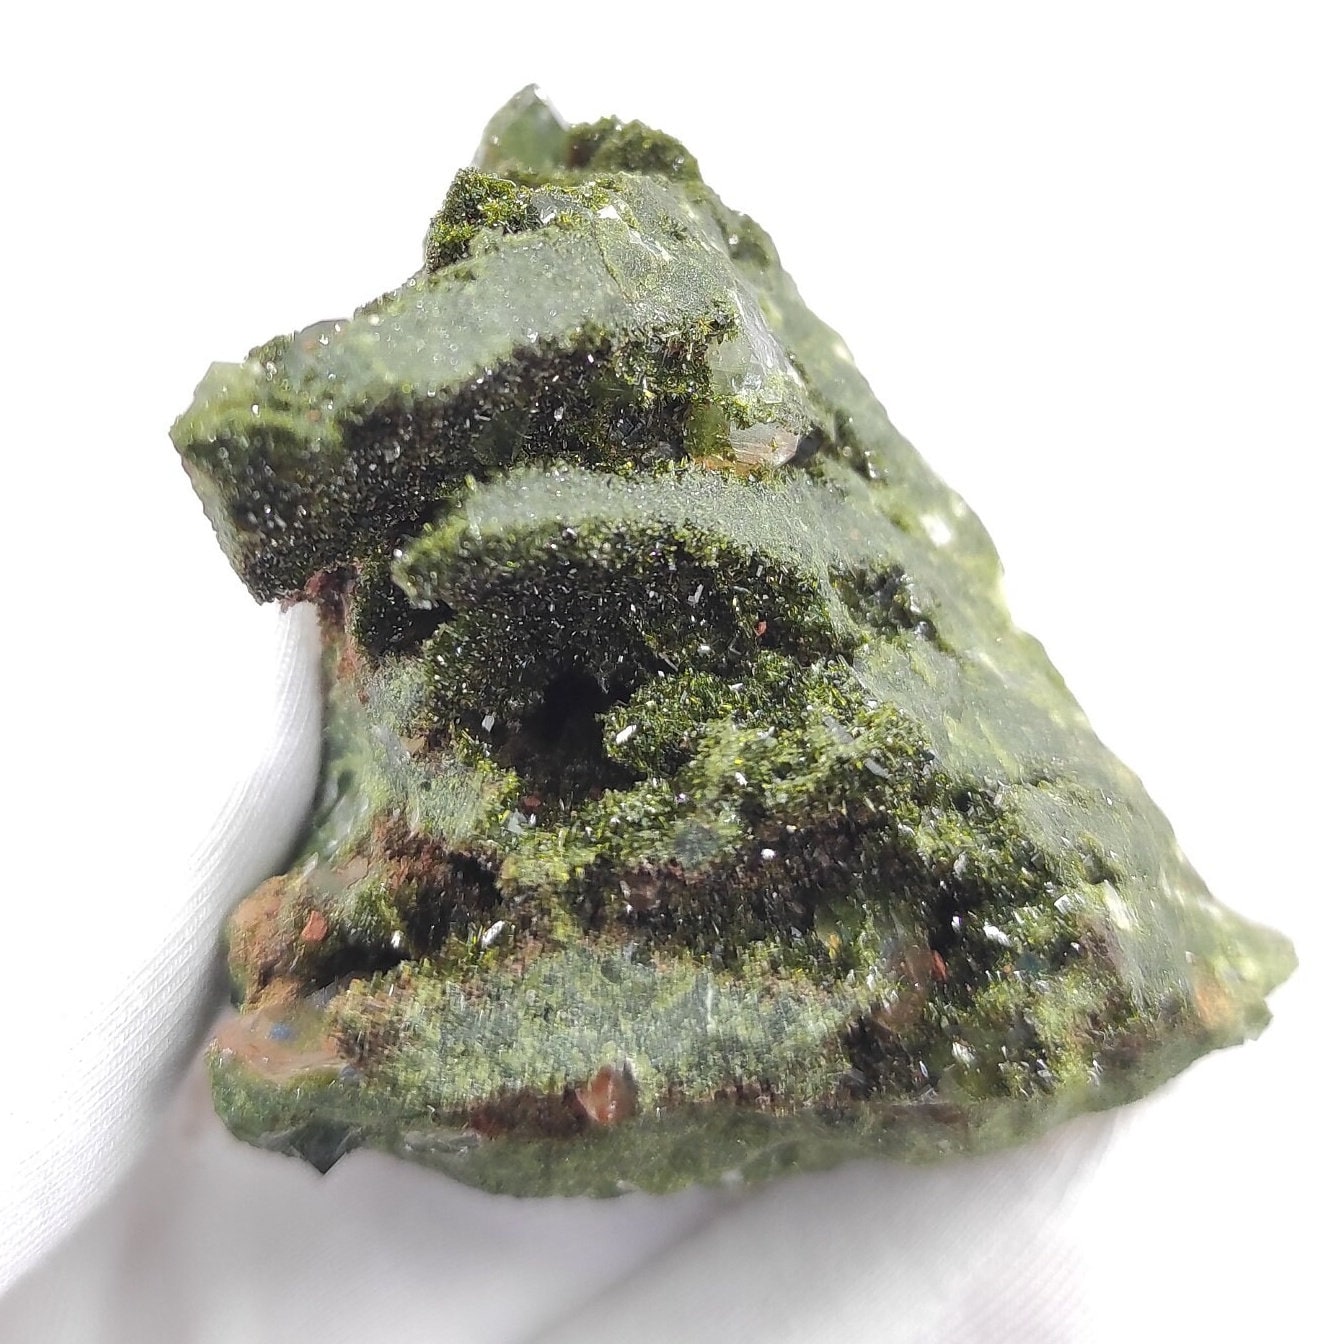 136g Sparkly Epidote & Forest Quartz - Hakkari, Turkey - Epidote with Clear Quartz - Forest Fairy Quartz - Natural Minerals - Rare Find